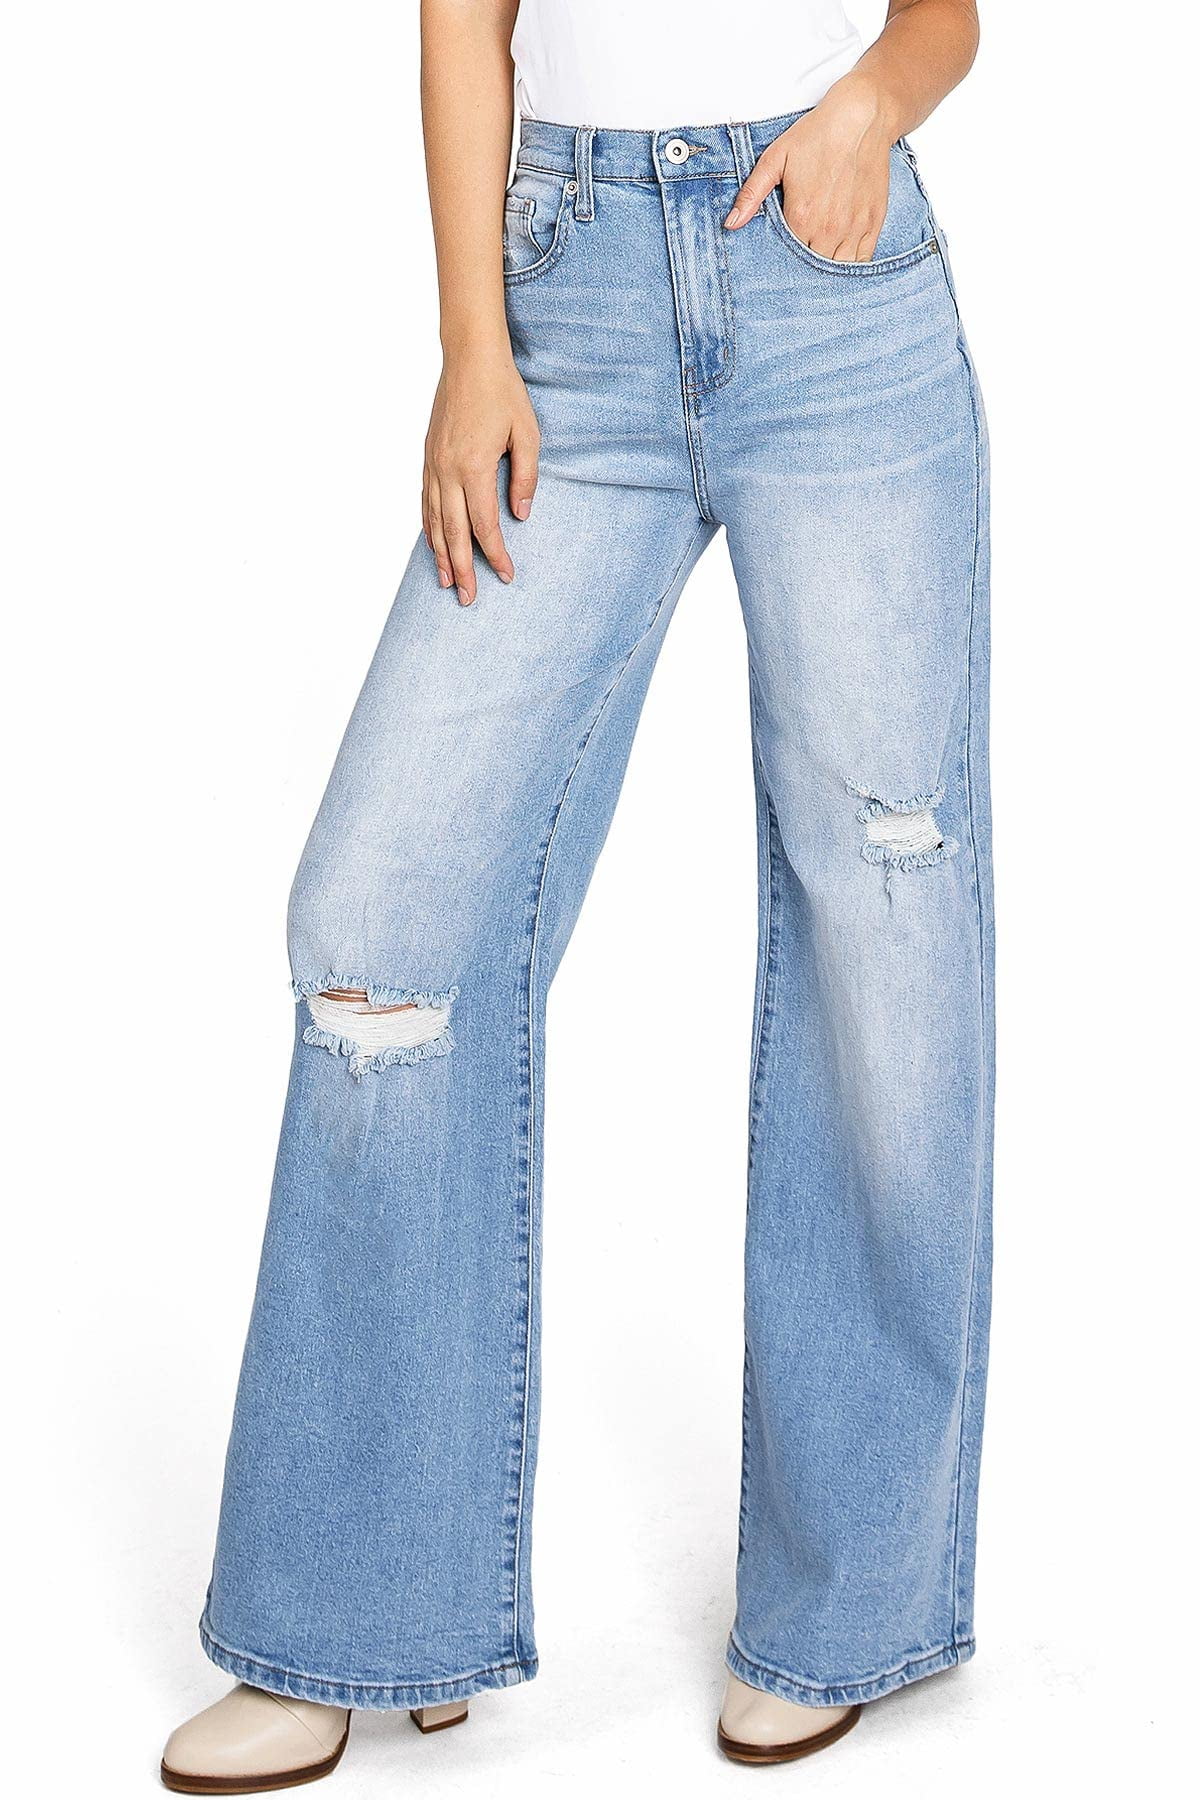 Flare Jeans Pants Women Vintage Denim Ladies Jeans – Bennys Beauty World